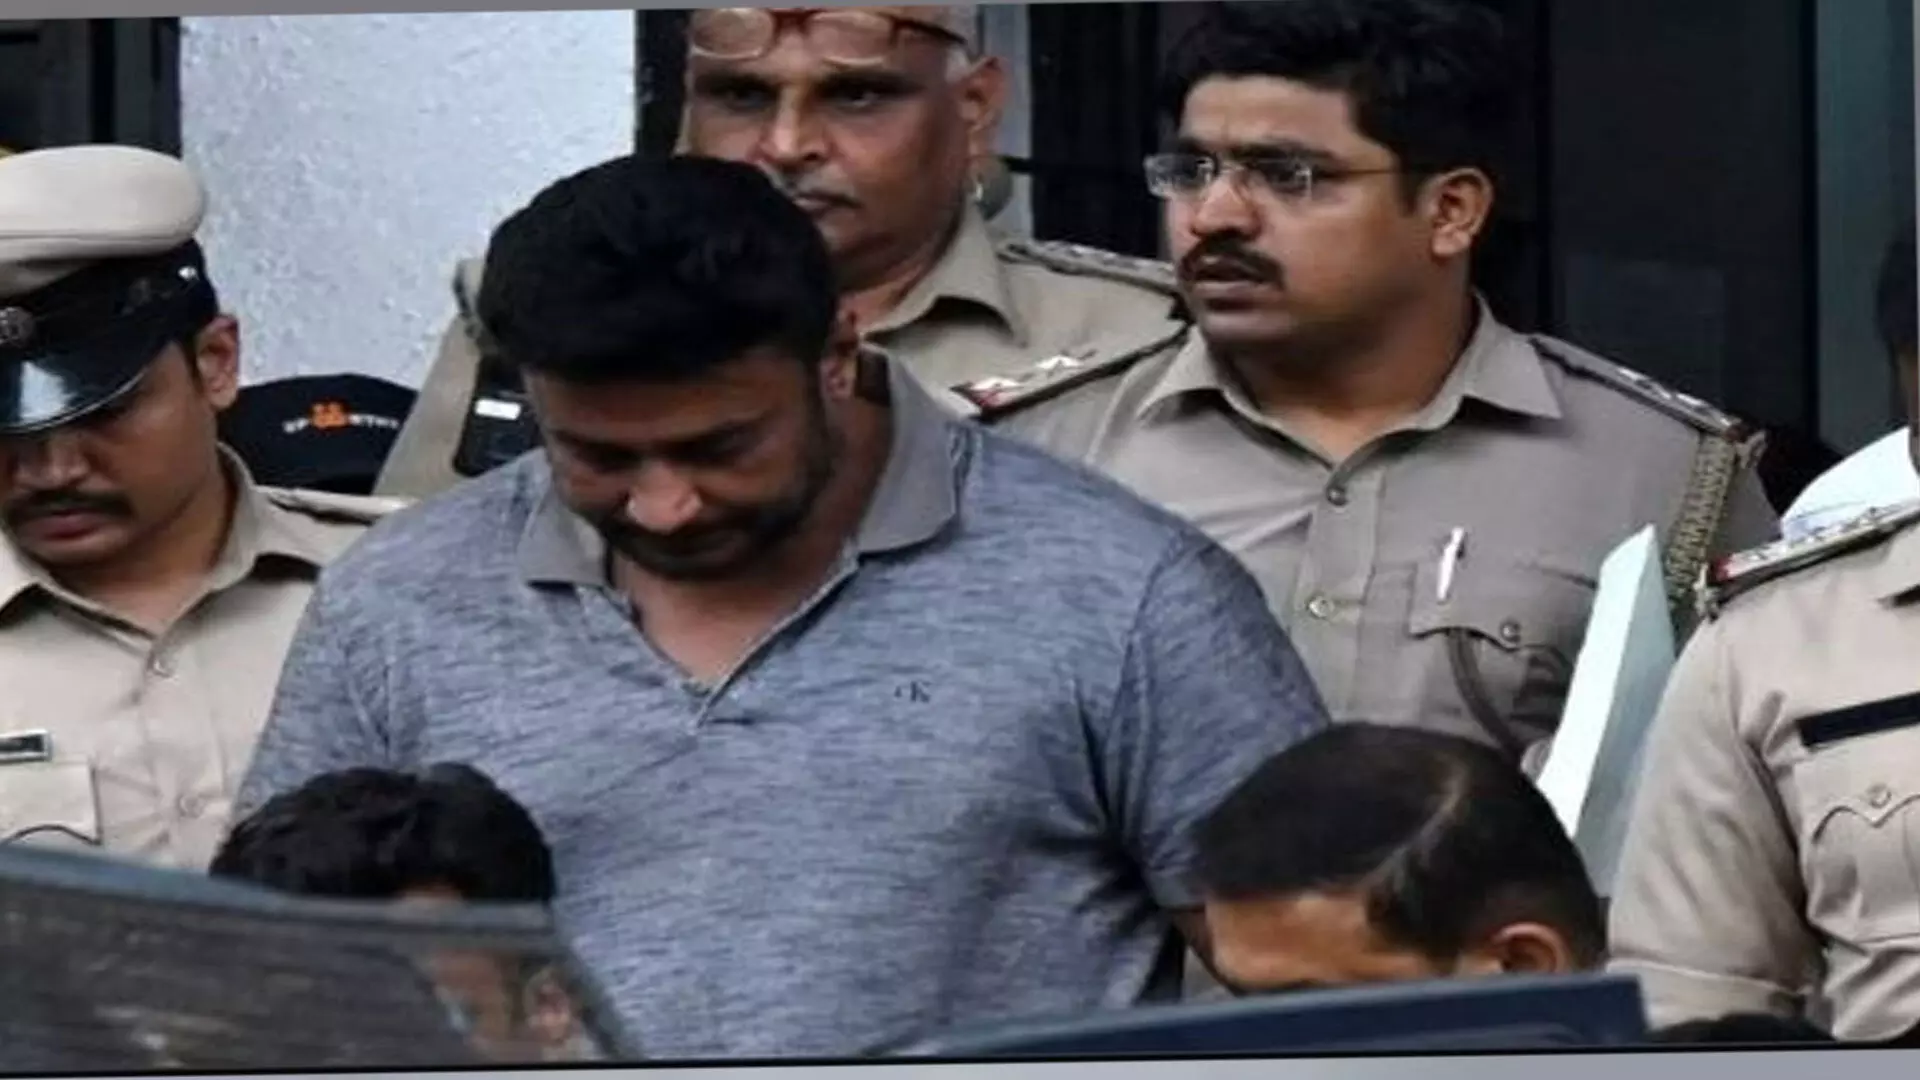 Renukaswamy murder: कर्नाटक की अदालत ने अभिनेता दर्शन को 4 जुलाई तक न्यायिक हिरासत में भेजा